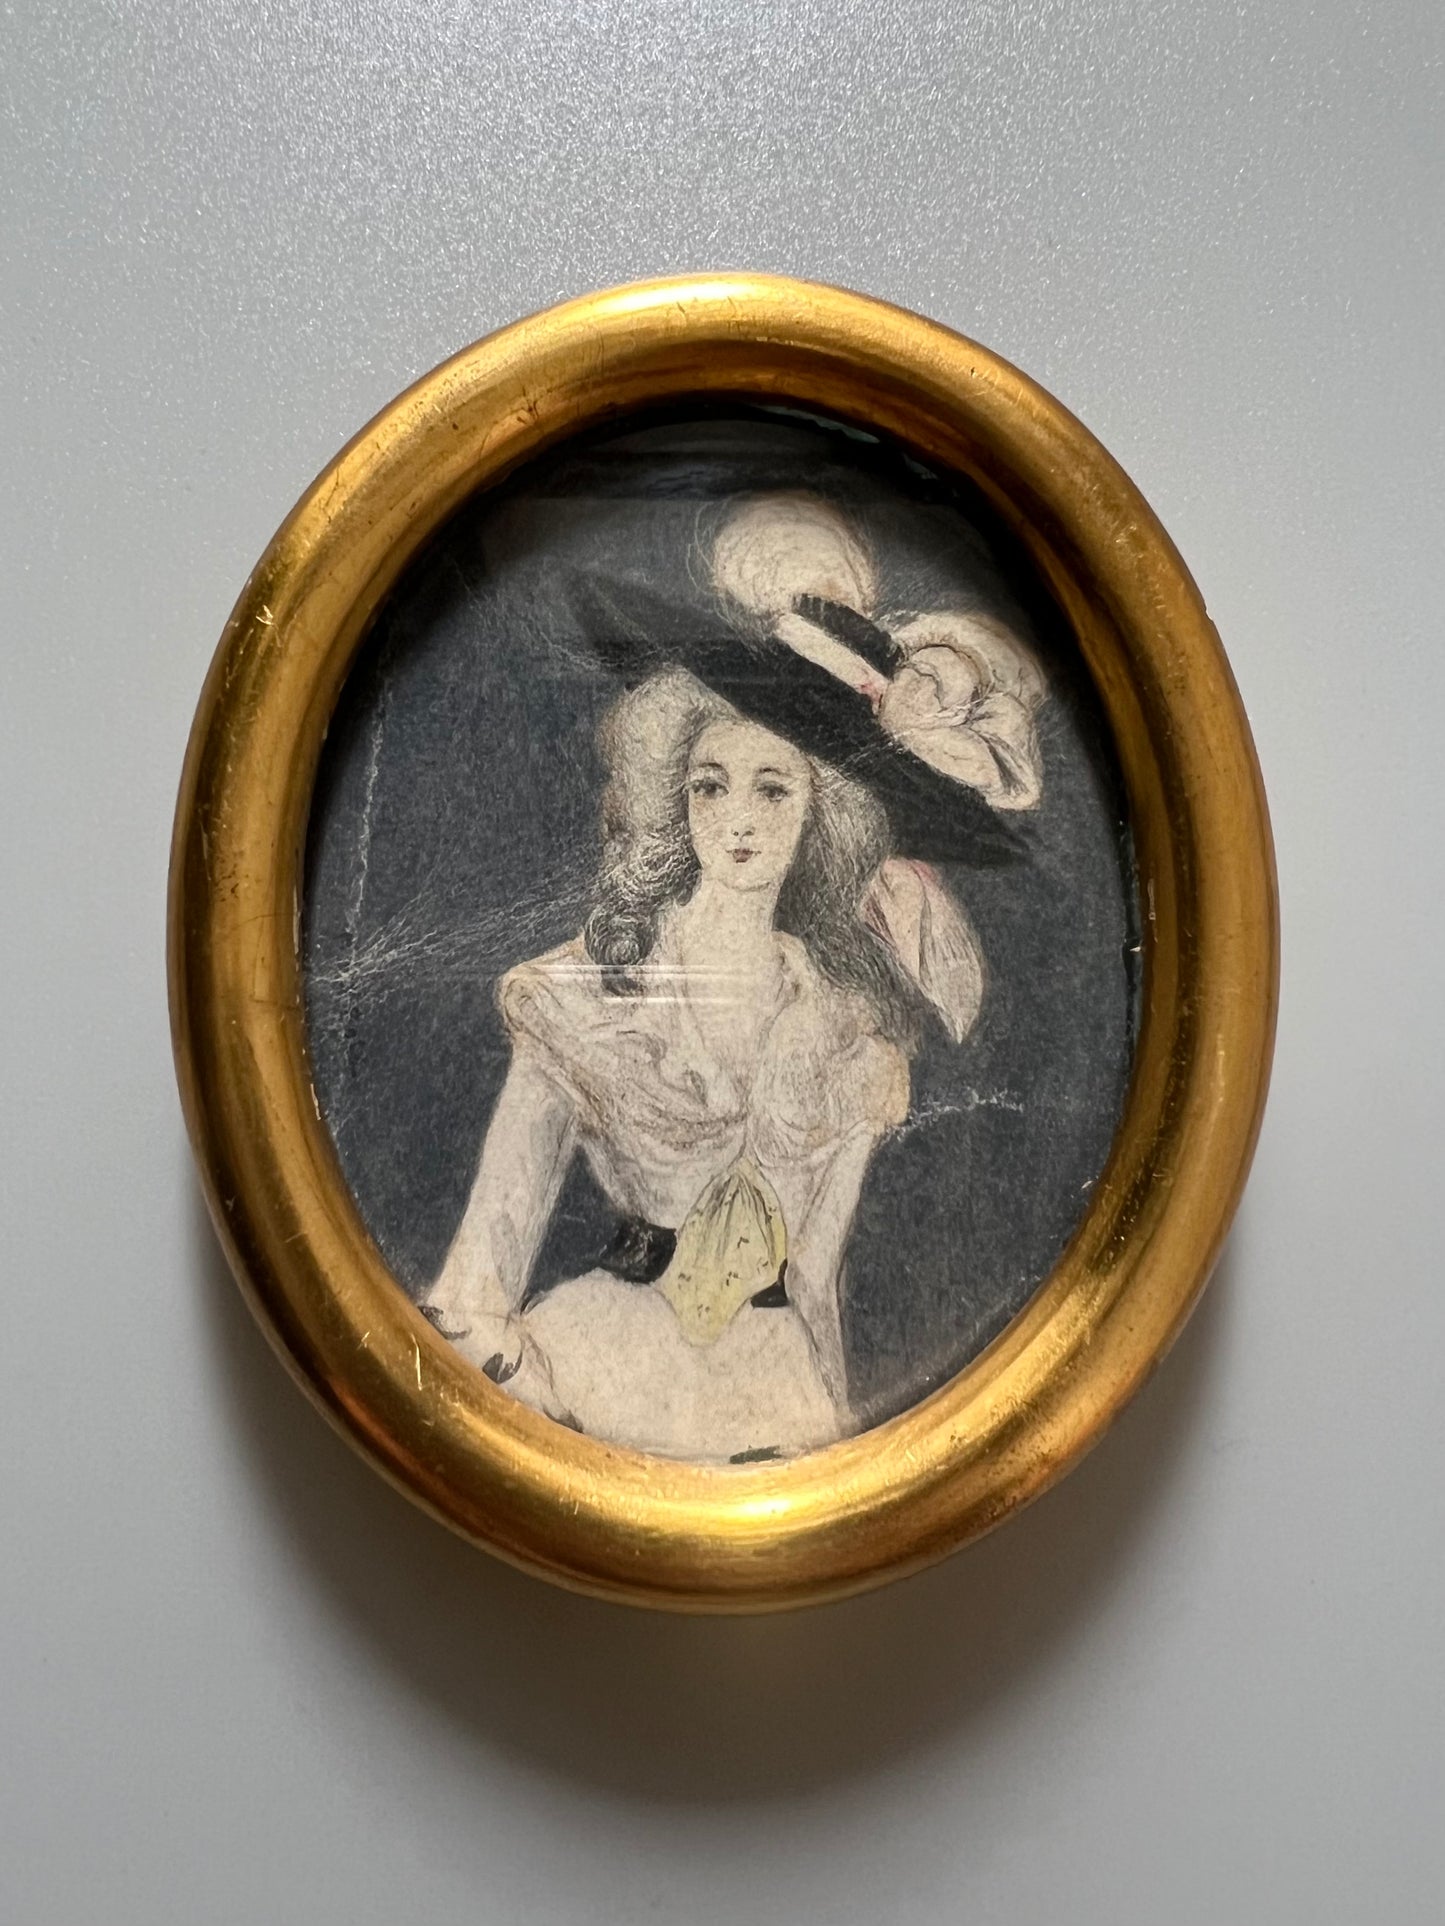 Miniatura retrato de dama en dibujo y acuarela, firmado por Mary Roig - Finales siglo XIX o Principios del XX